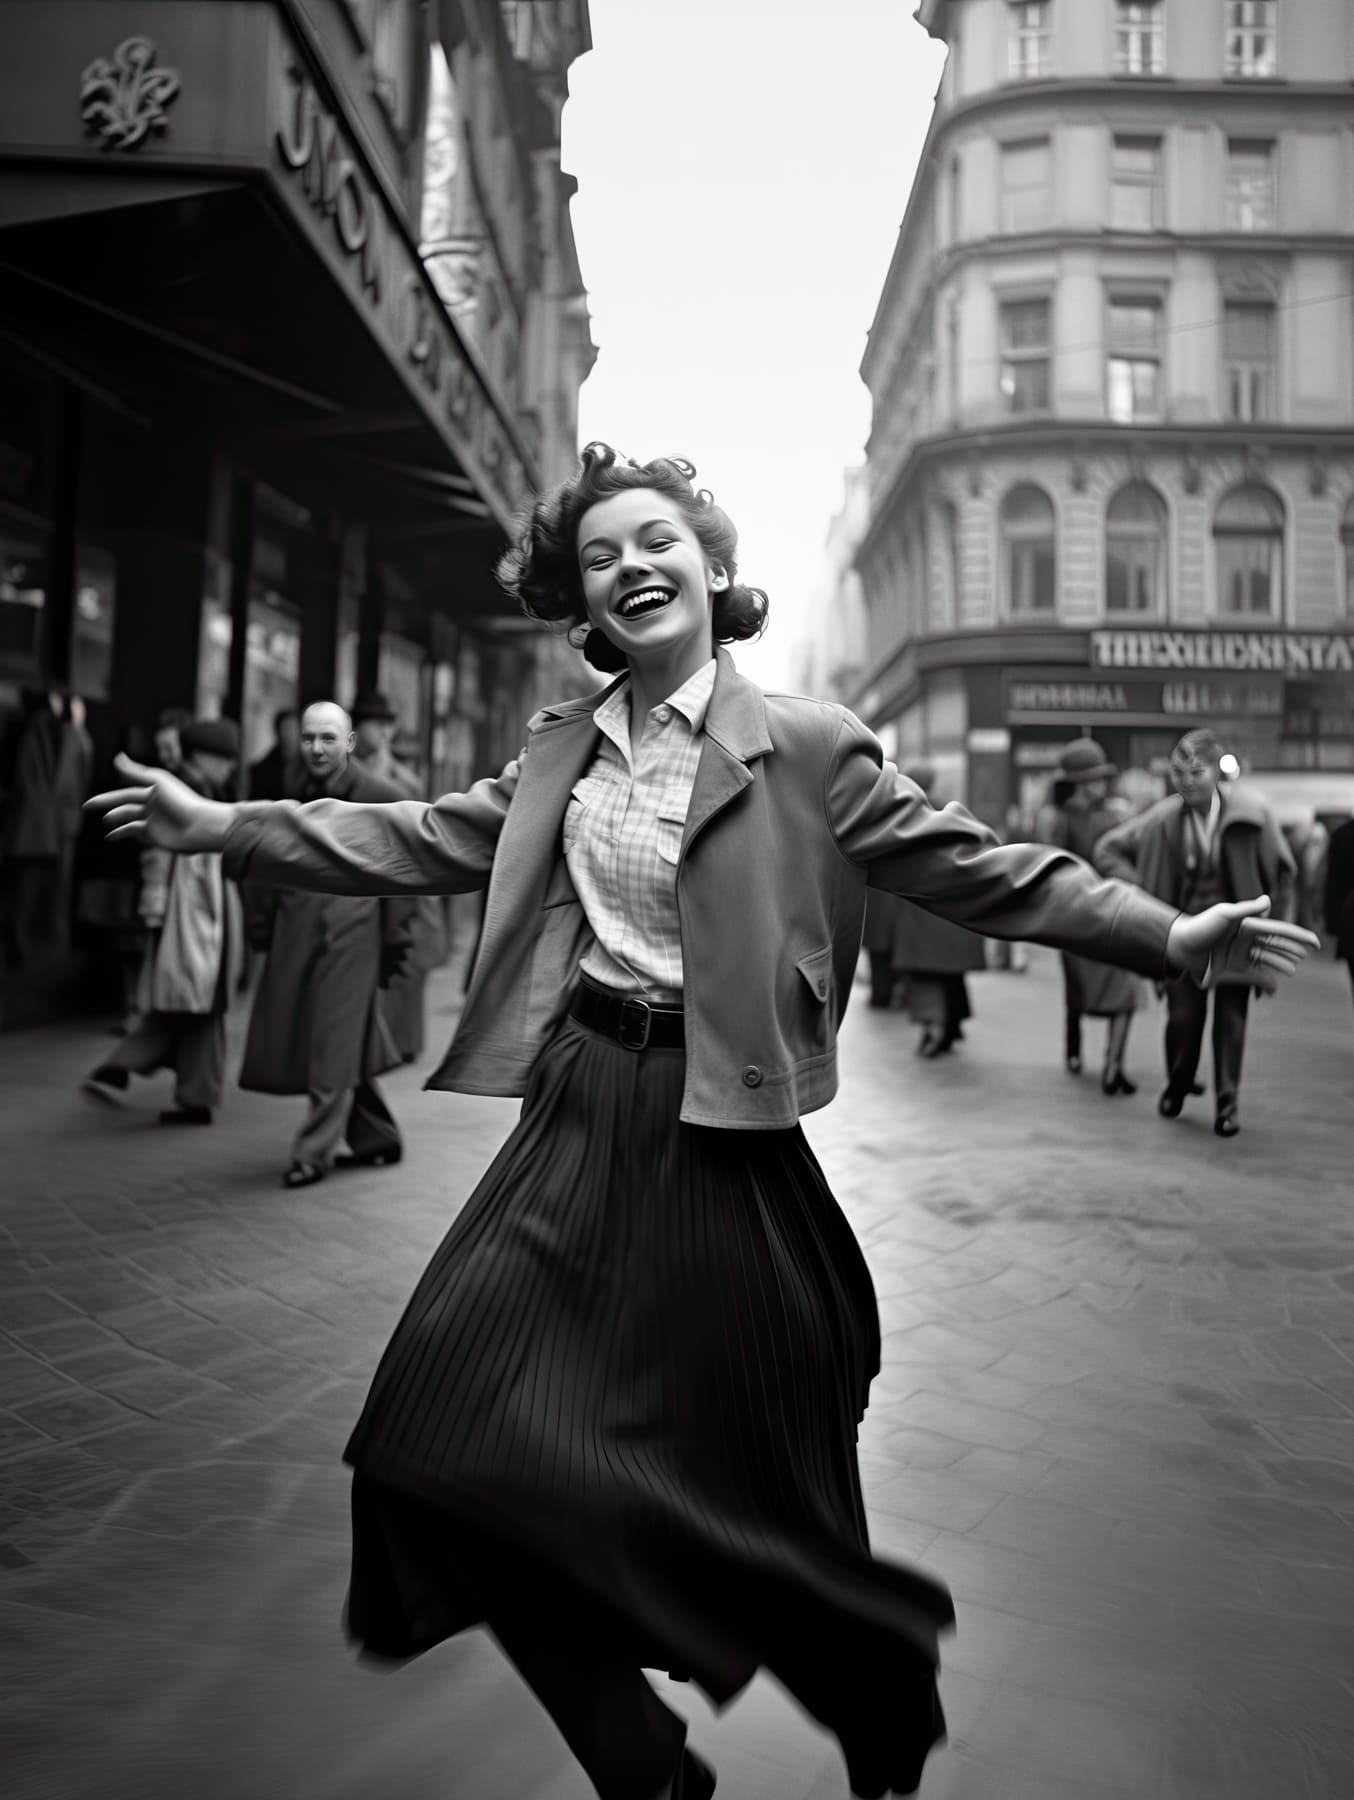 Junge Frau tanzt auf der Straße - schwarz-weiß-Foto im Stil der 40er Jahre